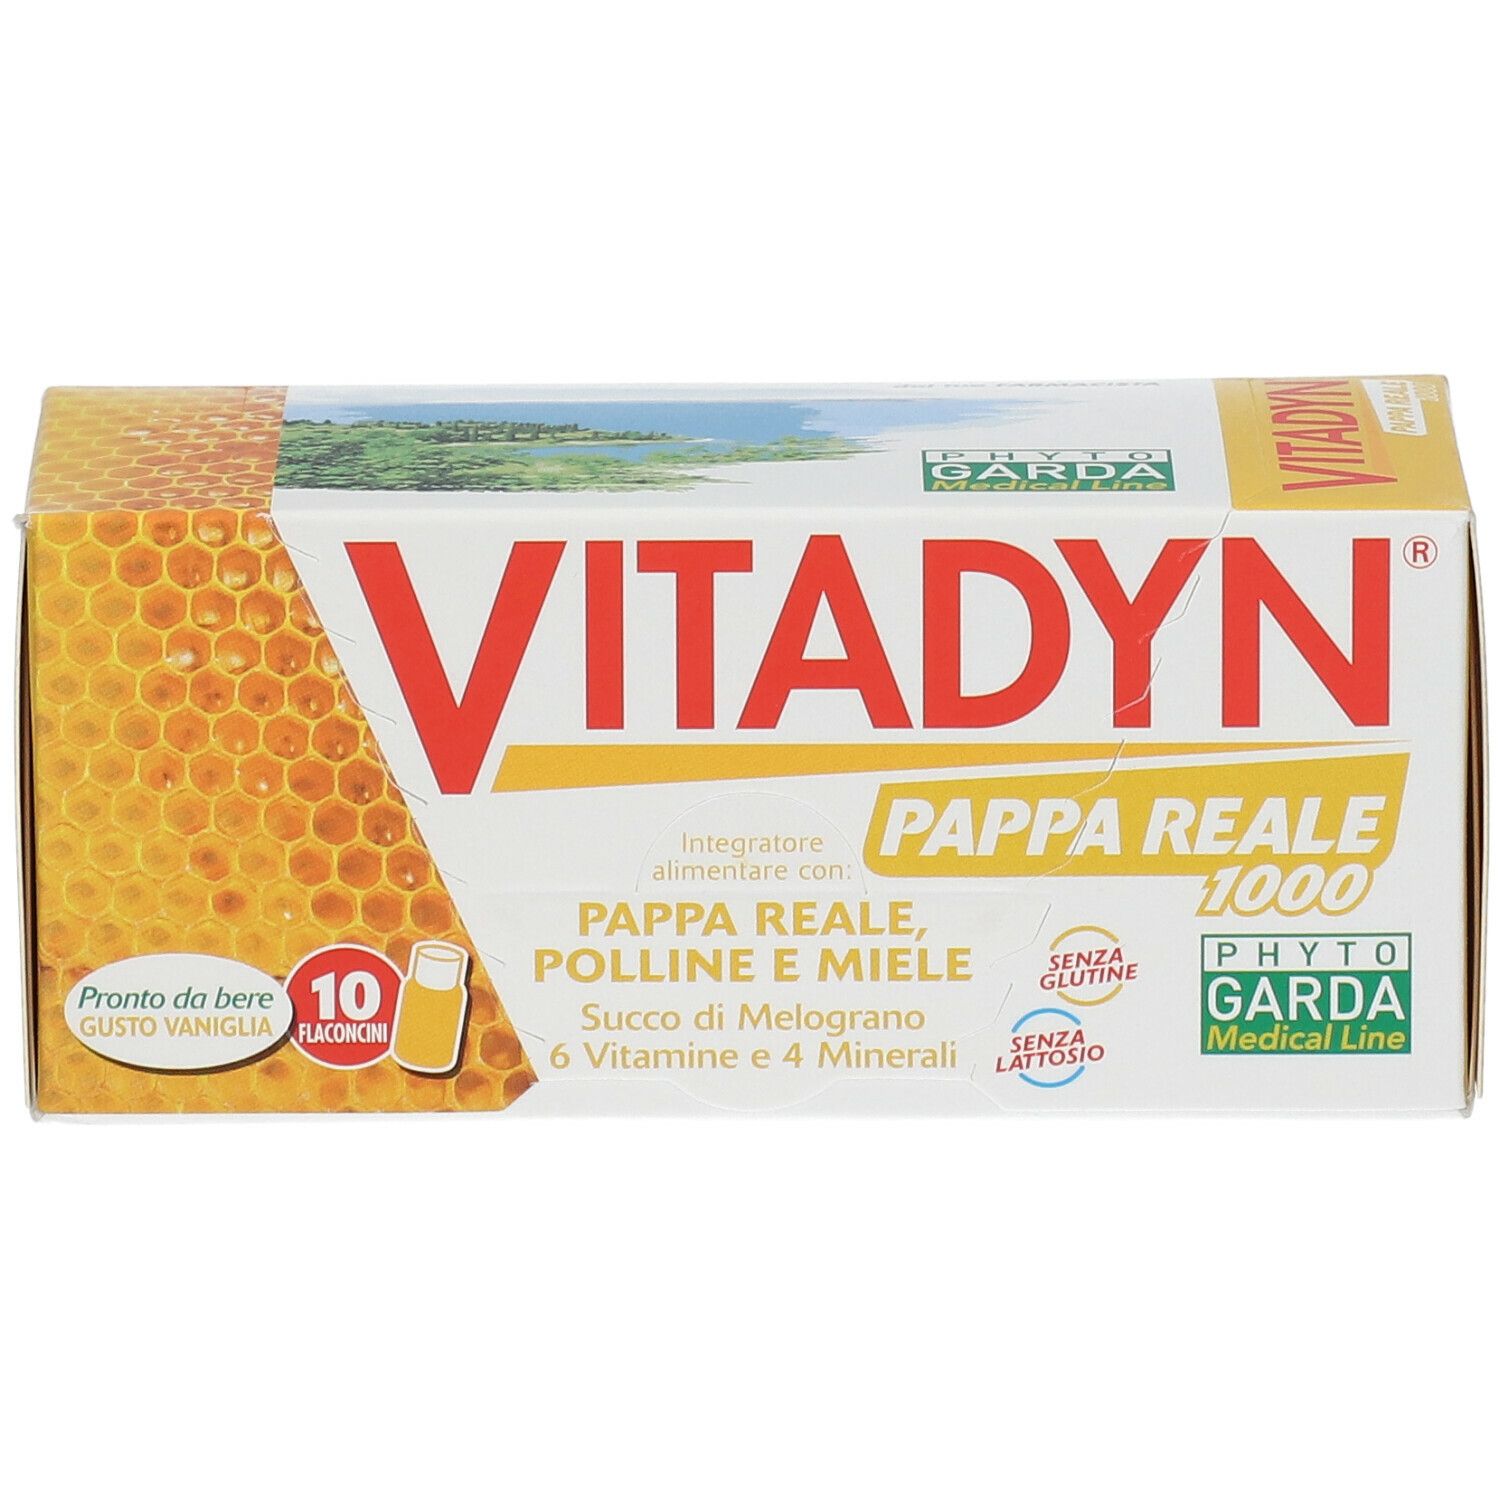 VITADYN® PAPPA REALE 1000 Gusto Vaniglia